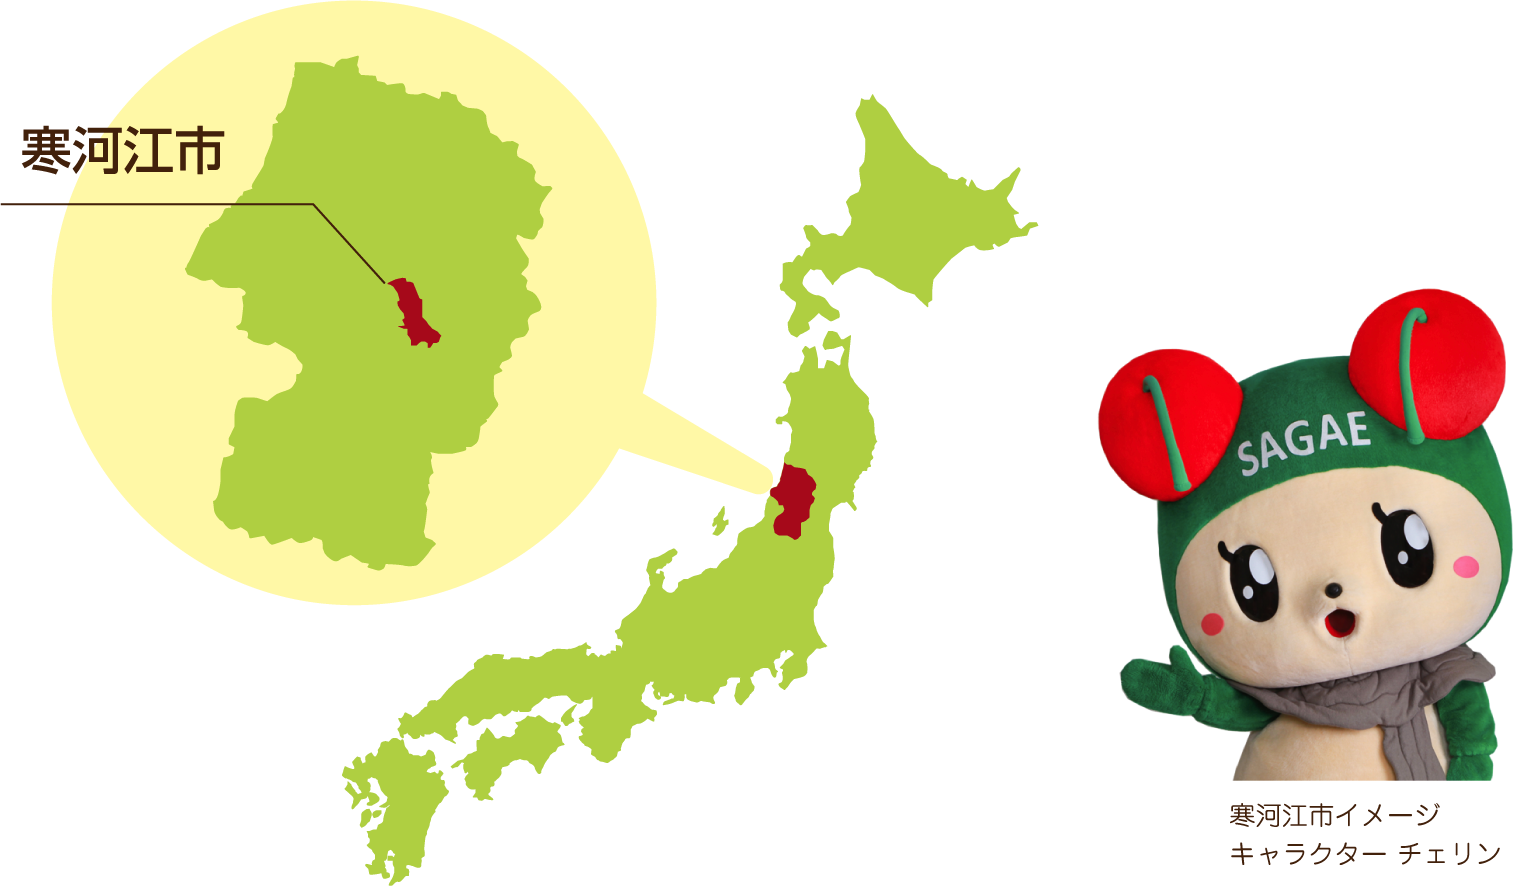 さがえについて 日本一さくらんぼの里さがえ さがえ観光ガイド 寒河江市観光物産協会